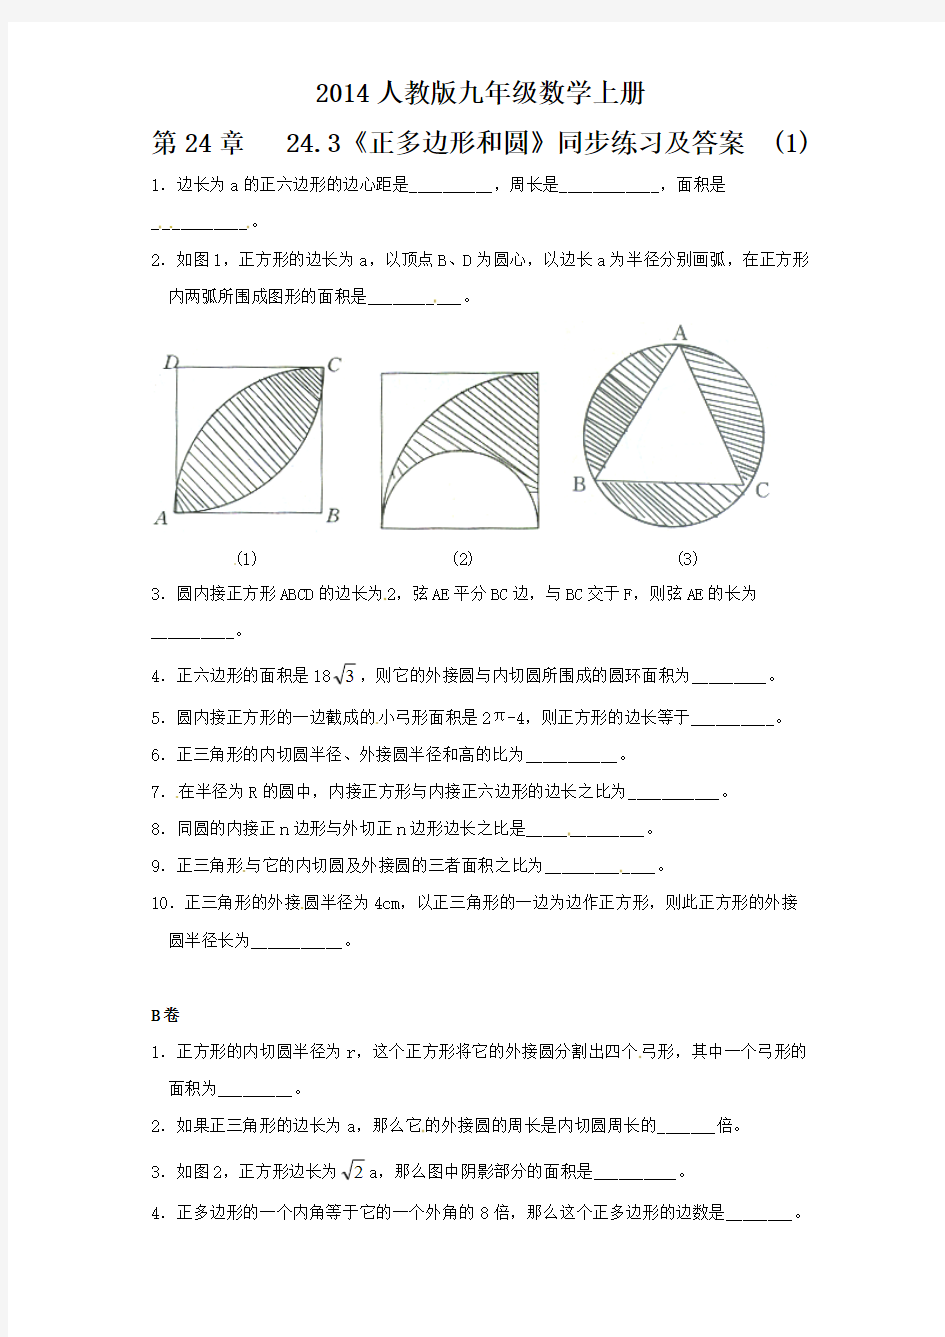 24.3 正多边形和圆(1)  同步练习